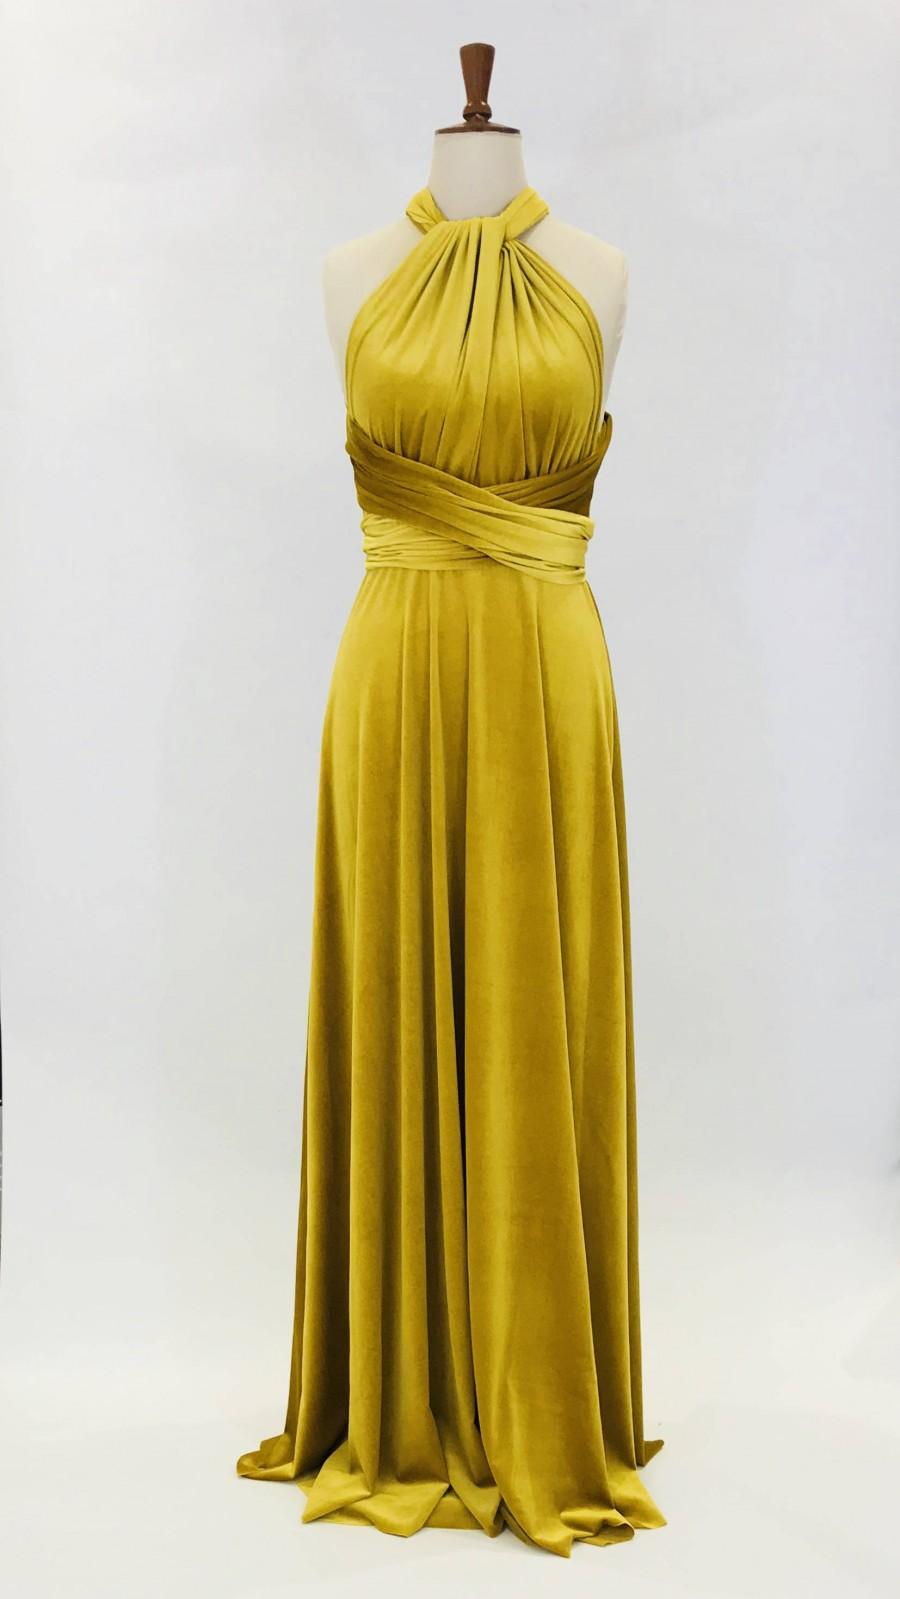 Mariage - Mustard yellow velvet dress, multiway dress, infinity dress, bridesmaid dress, prom dress, long dress, evening dress, convertible dress